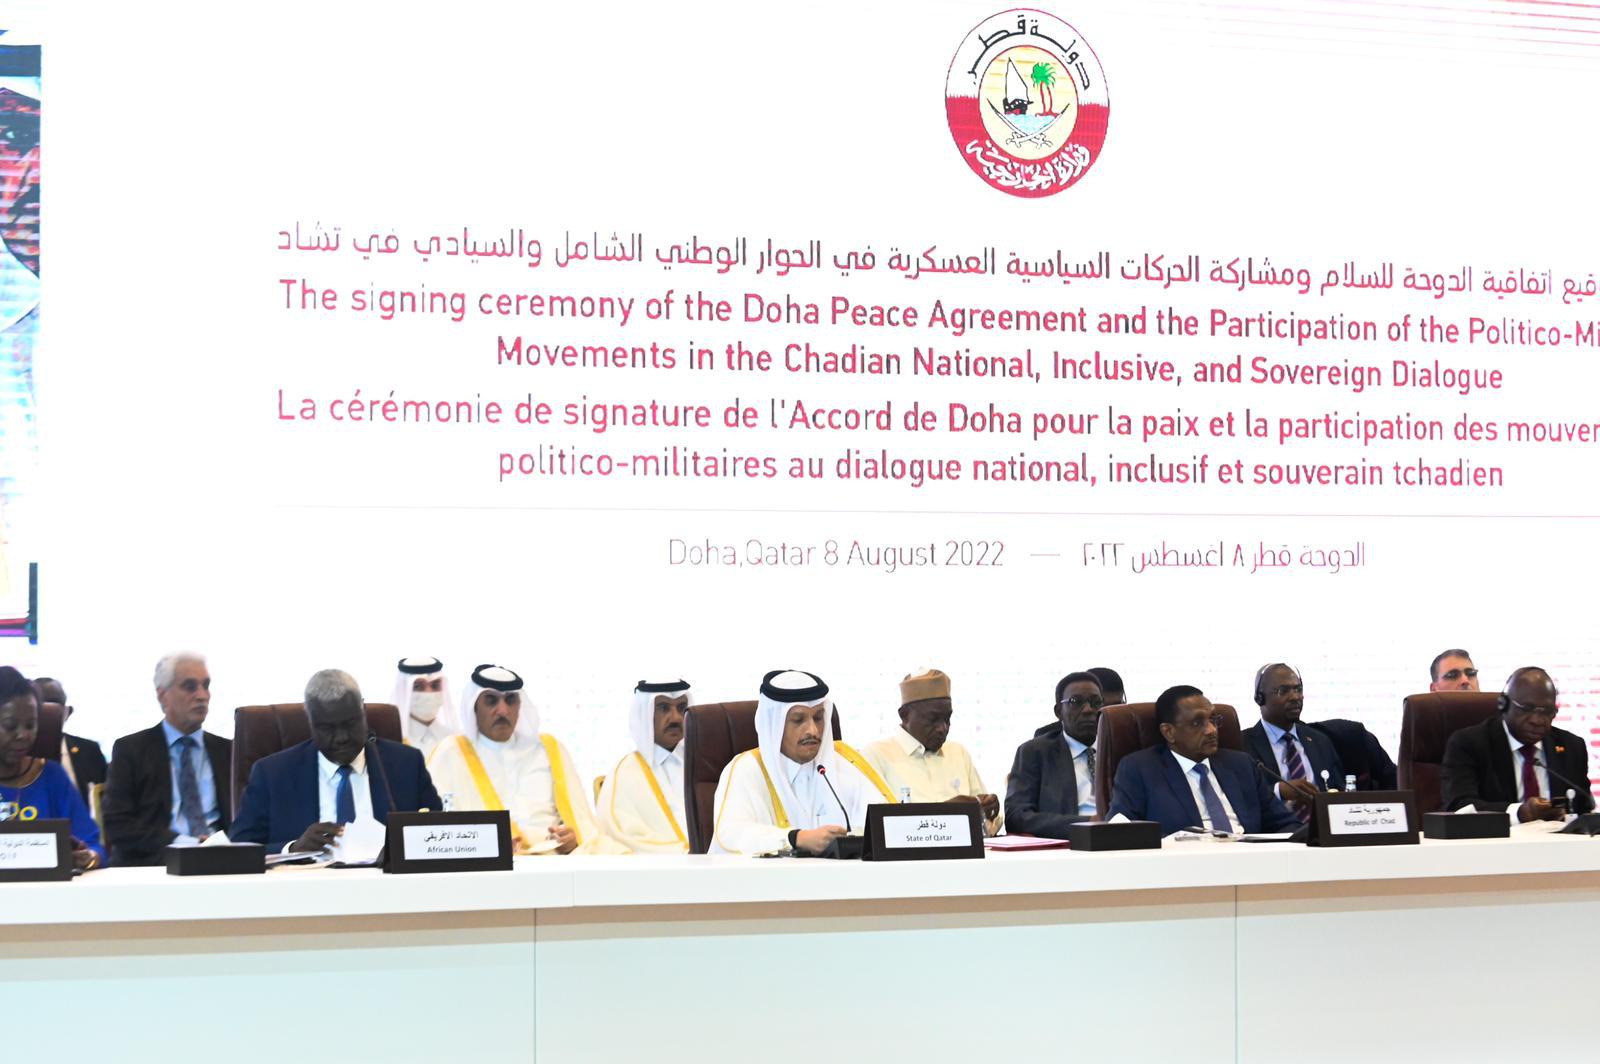 قطر ترعى توقيع الأطراف التشادية على اتفاقية الدوحة للسلام ومشاركة الحركات السياسية العسكرية في الحوار الوطني الشامل السيادي